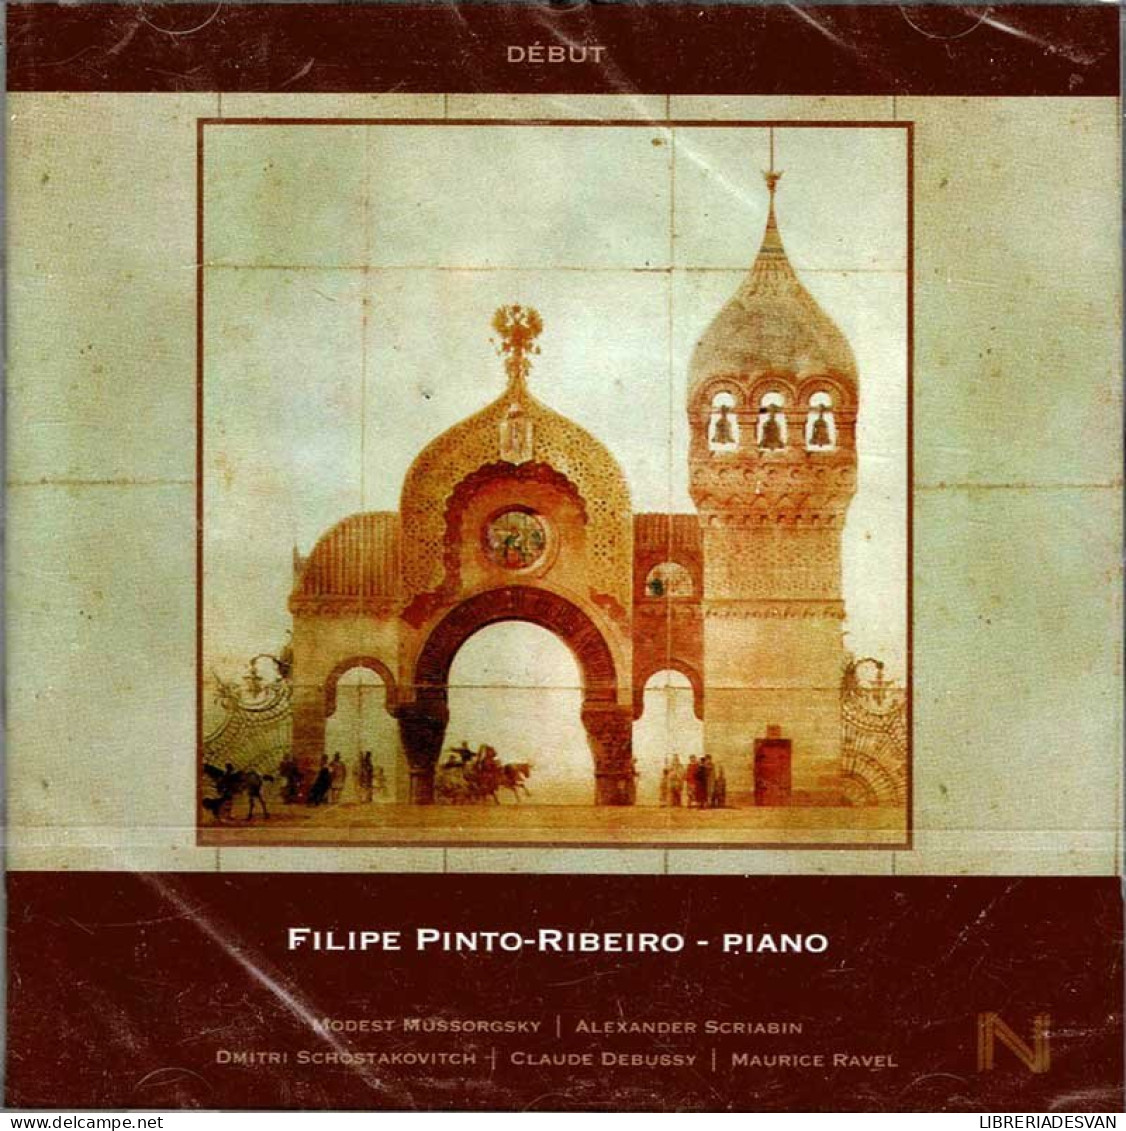 Filipe Pinto-Ribeiro - Début. CD - Klassik